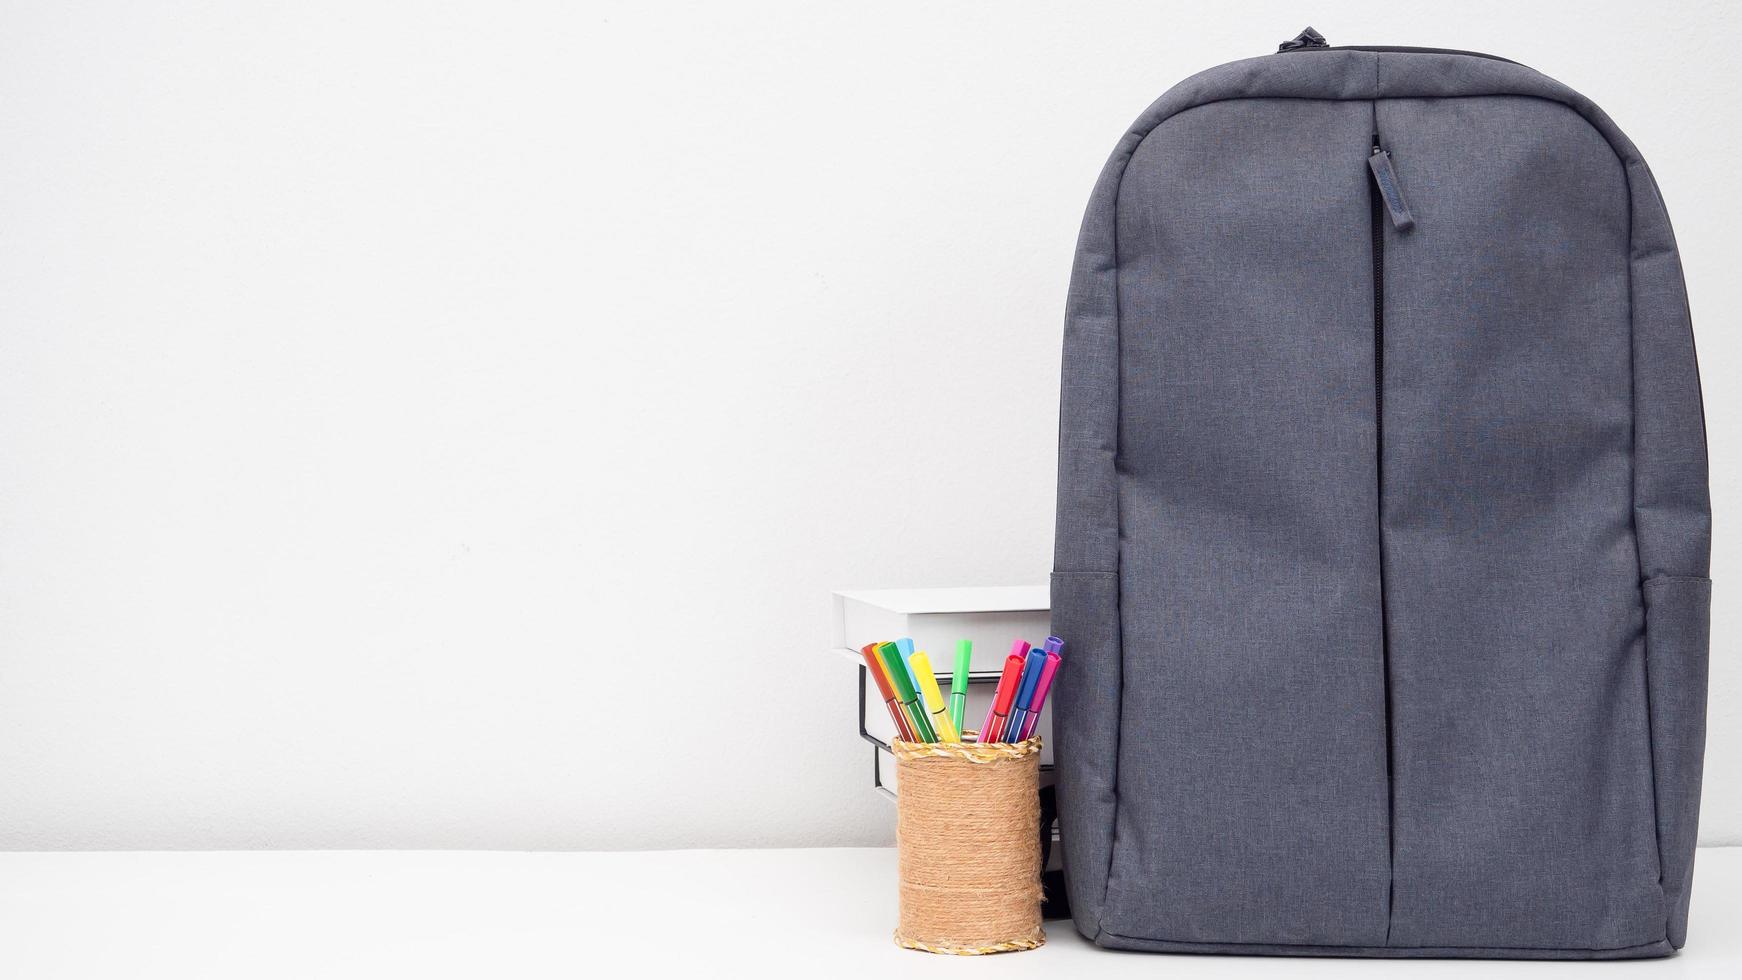 sac d'école avec boîte à crayons et livres sur le bureau espace de copie de fond blanc photo